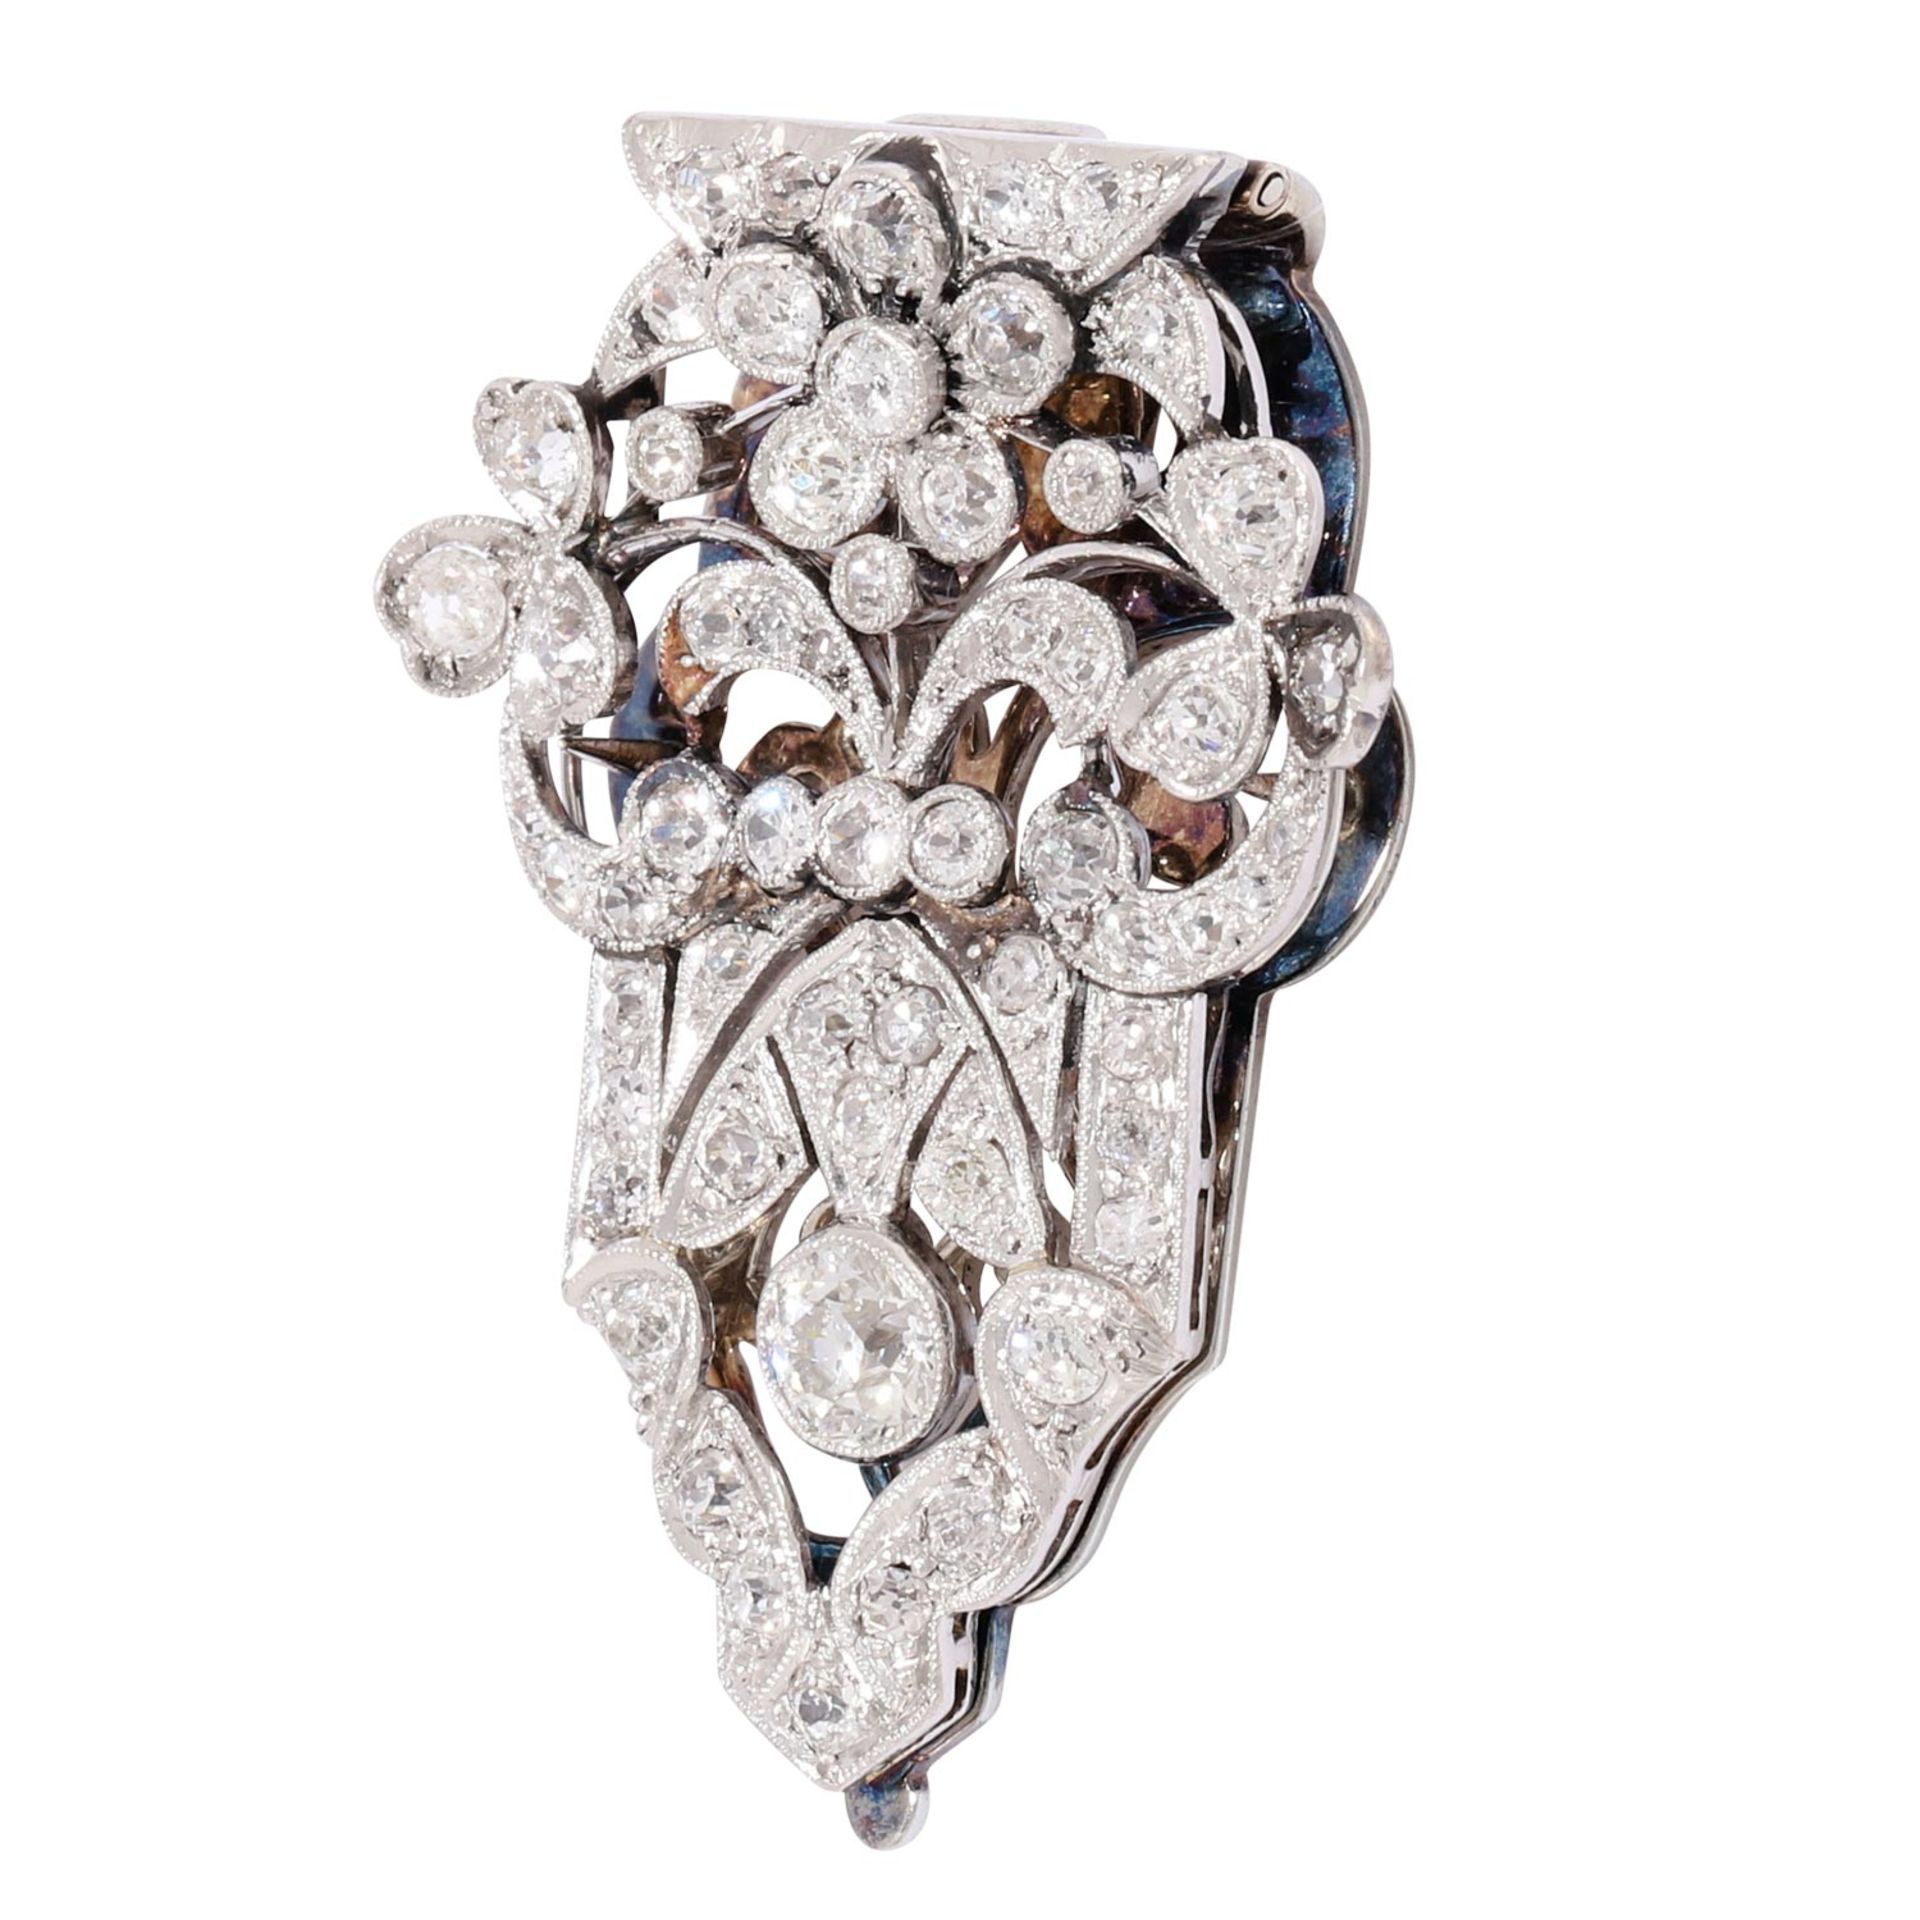 Antiker Kleiderclip mit Diamanten von zus. ca. 1,65 ct,  - Bild 3 aus 4